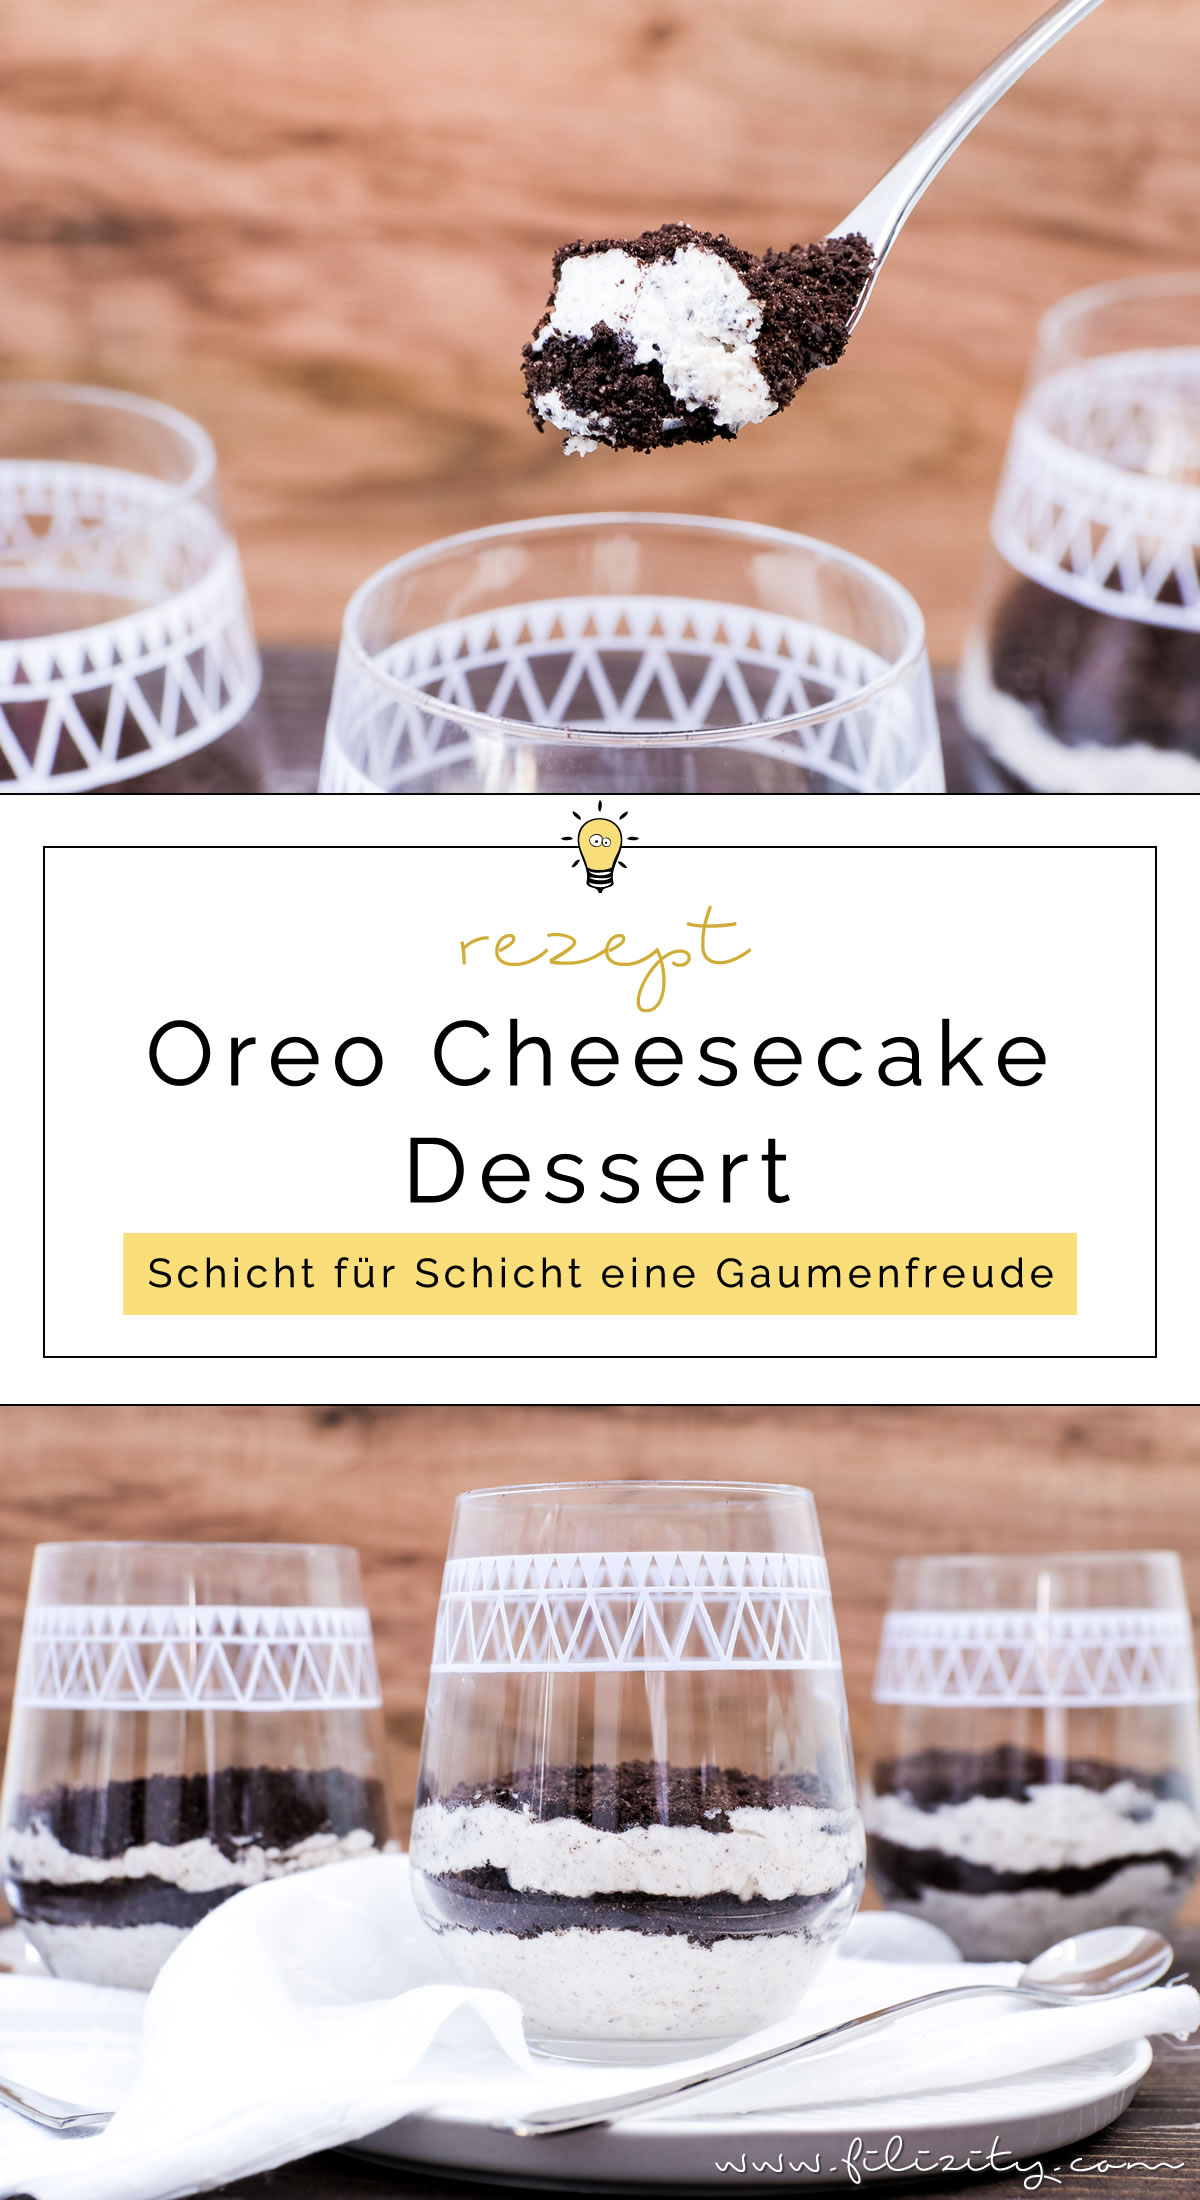 Rezept für No bake Oreo Cheesecake Schichtdessert im Glas | Filizity.com | Food-Blog aus dem Rheinland #oreo #cheesecake #dessert